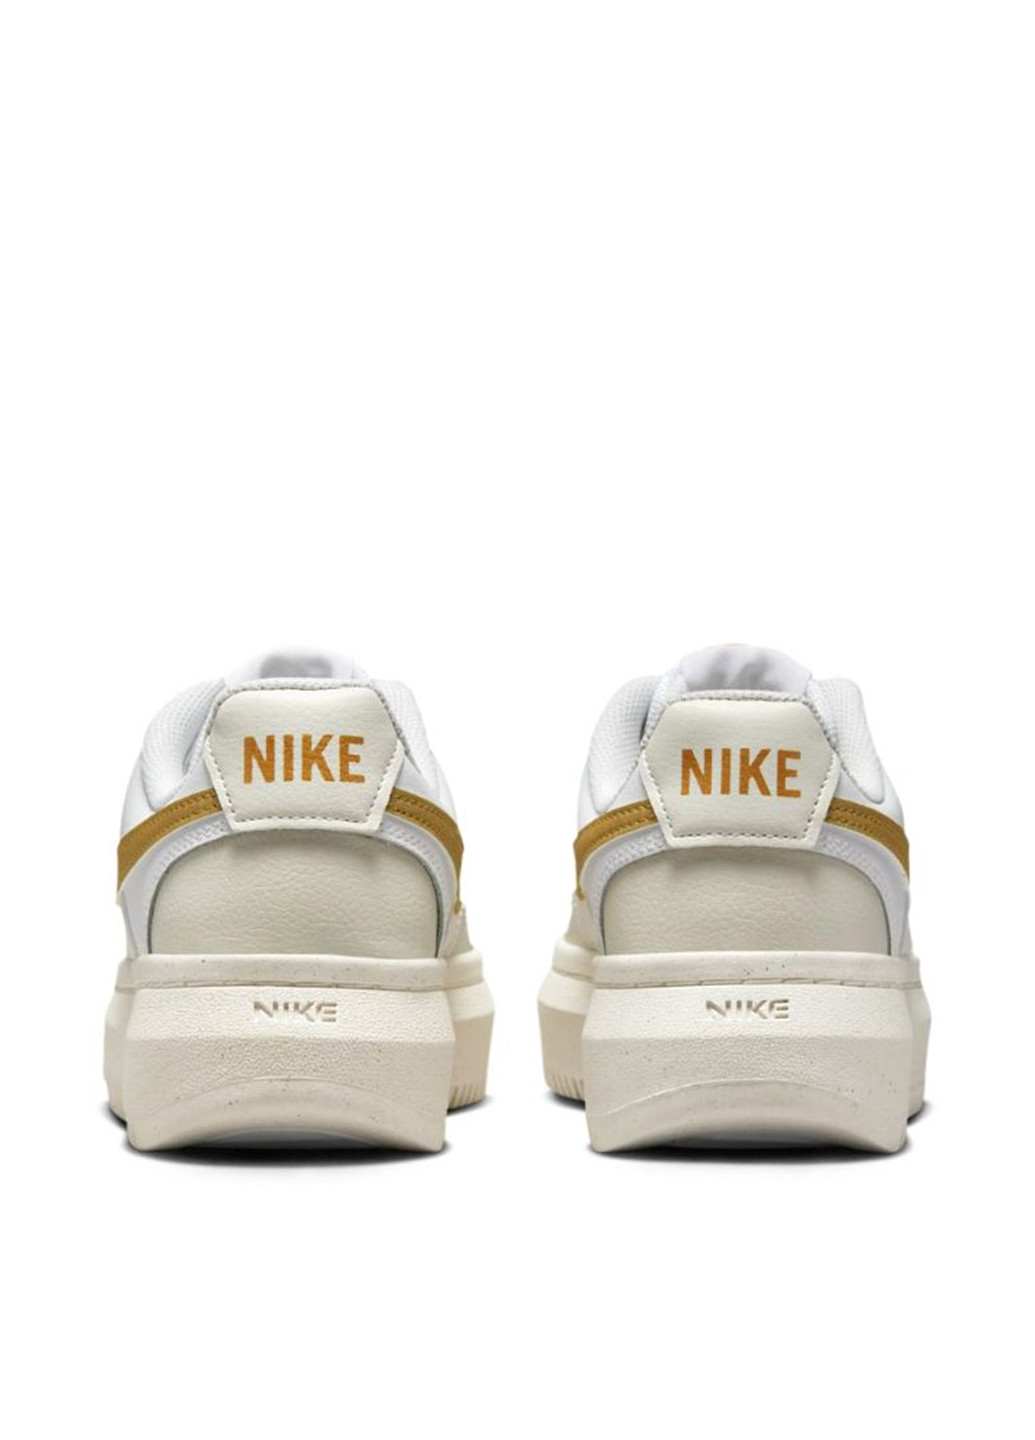 Цветные демисезонные кроссовки dz5394-100_2024 Nike Court Vision Alta